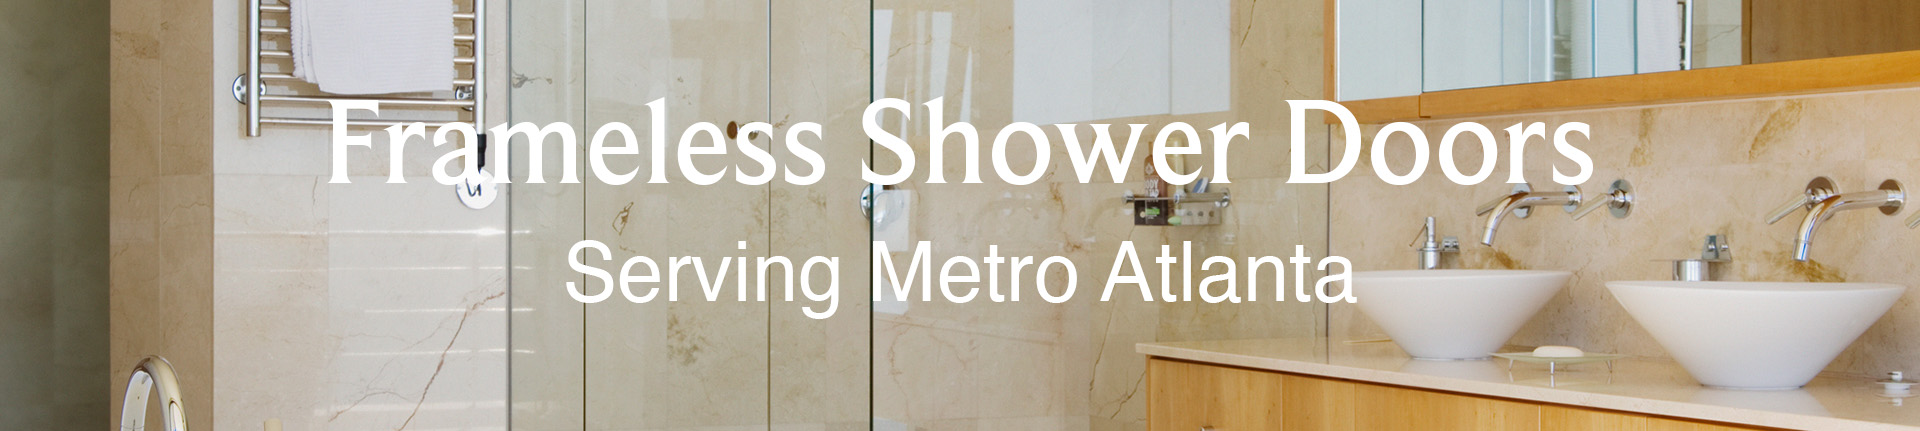 Frameless Shower Doors Serving Metro Atlanta